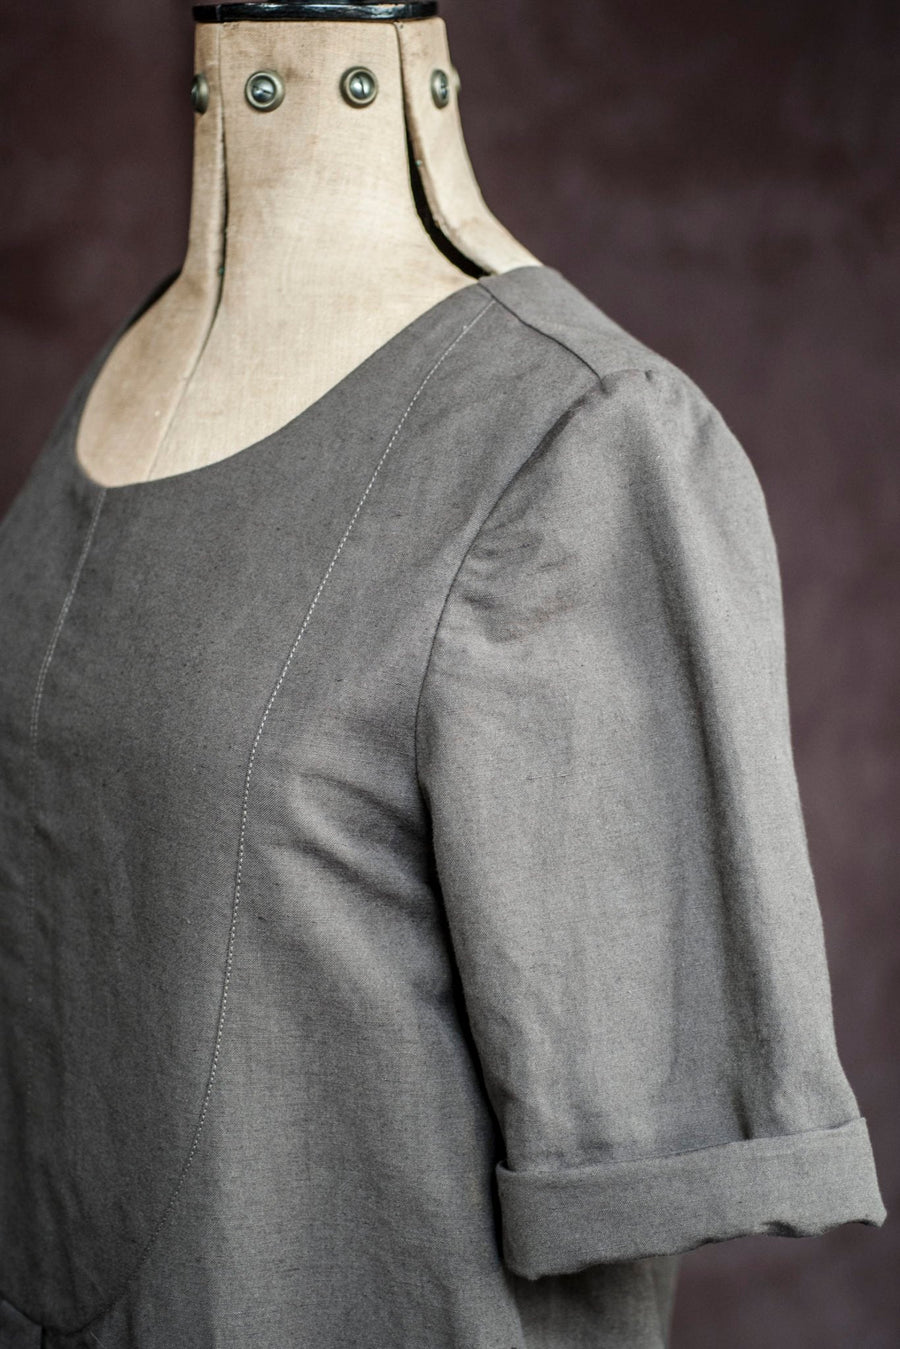 Patron robe chemise par Merchant & Mills,  tailles 20-28